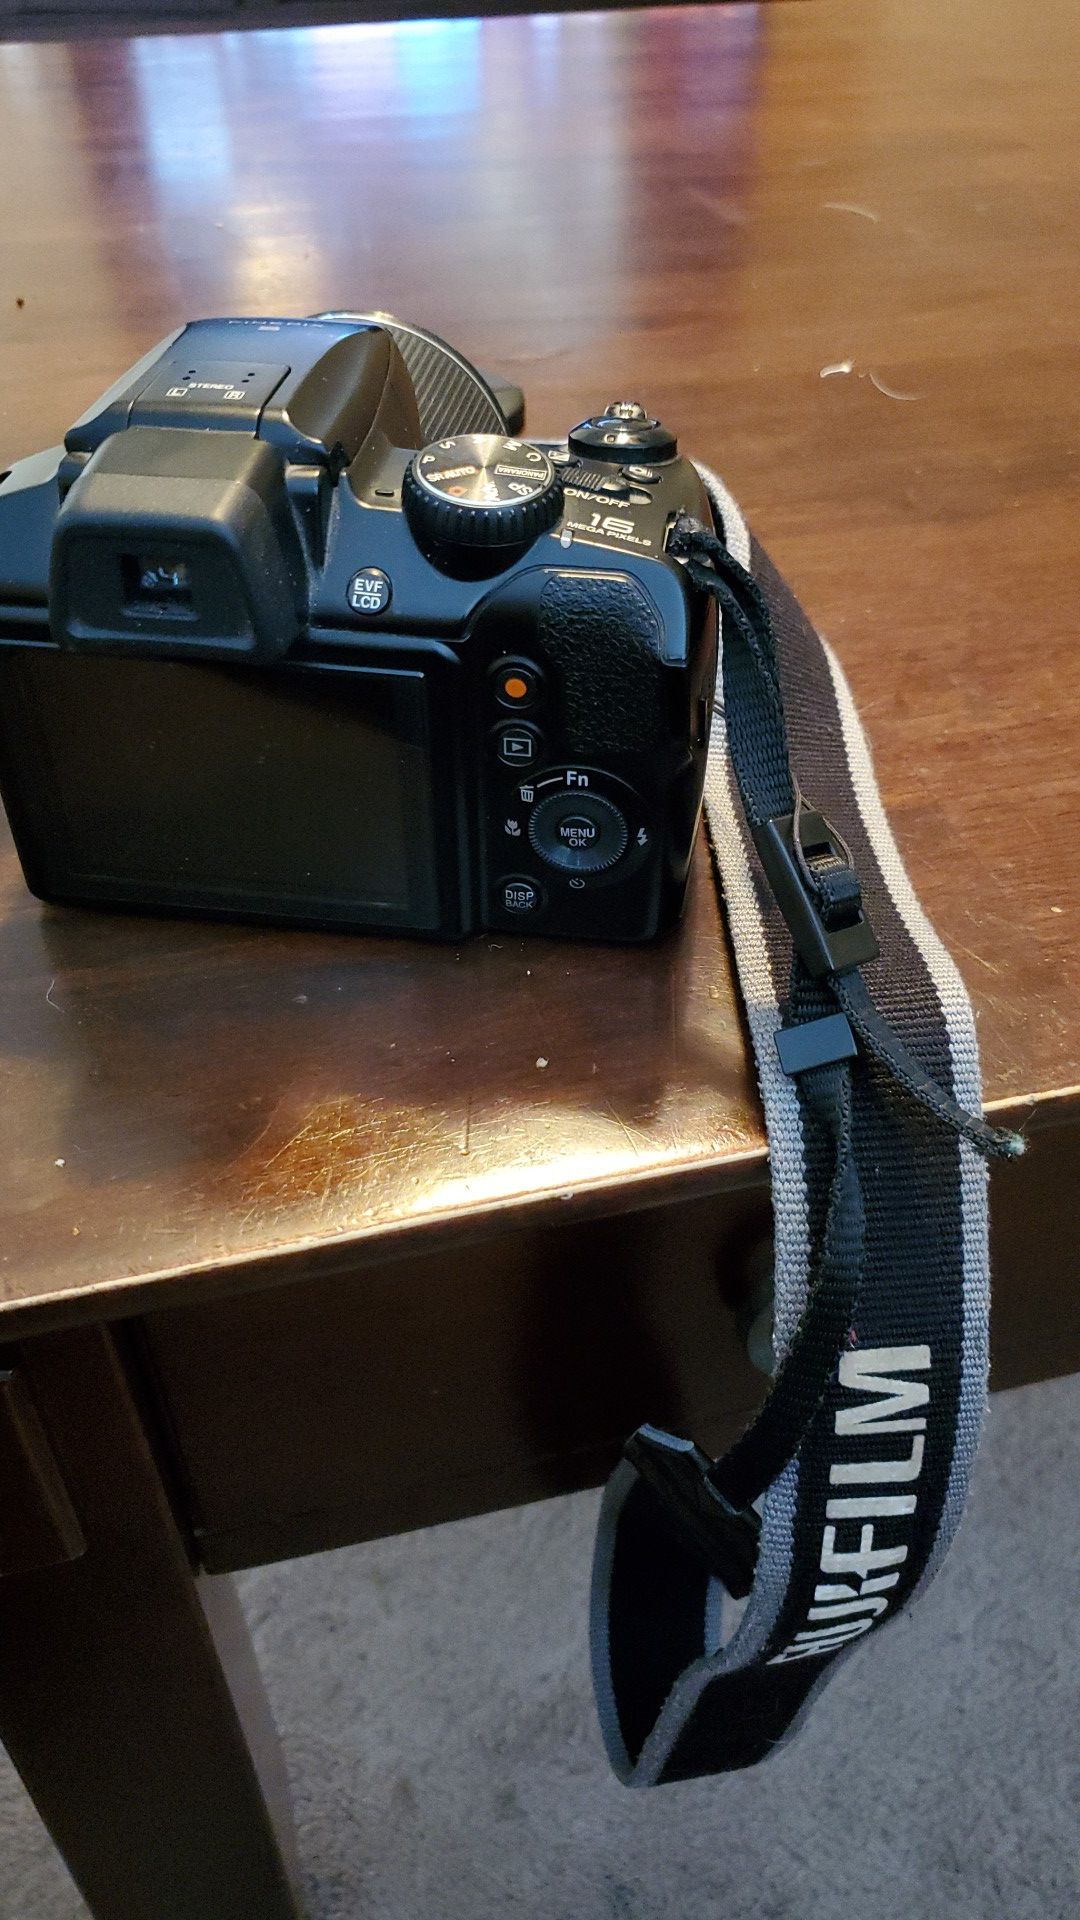 Fujifilm Finepix S Digital Camera and Video Recorder